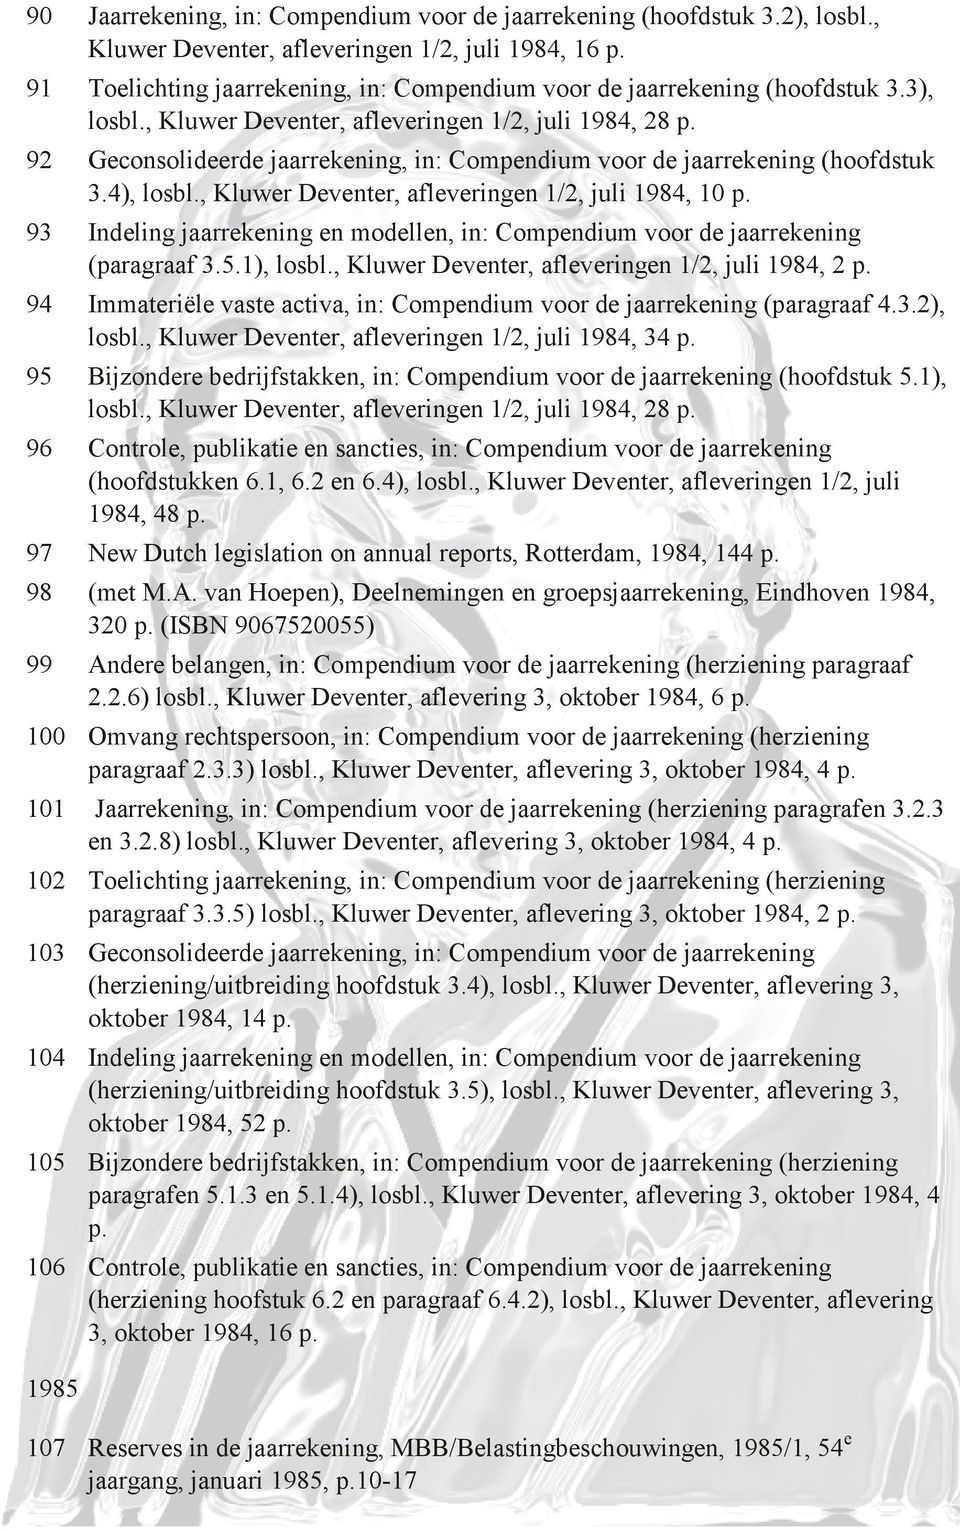 92 Geconsolideerde jaarrekening, in: Compendium voor de jaarrekening (hoofdstuk 3.4), losbl., Kluwer Deventer, afleveringen 1/2, juli 1984, 10 p.